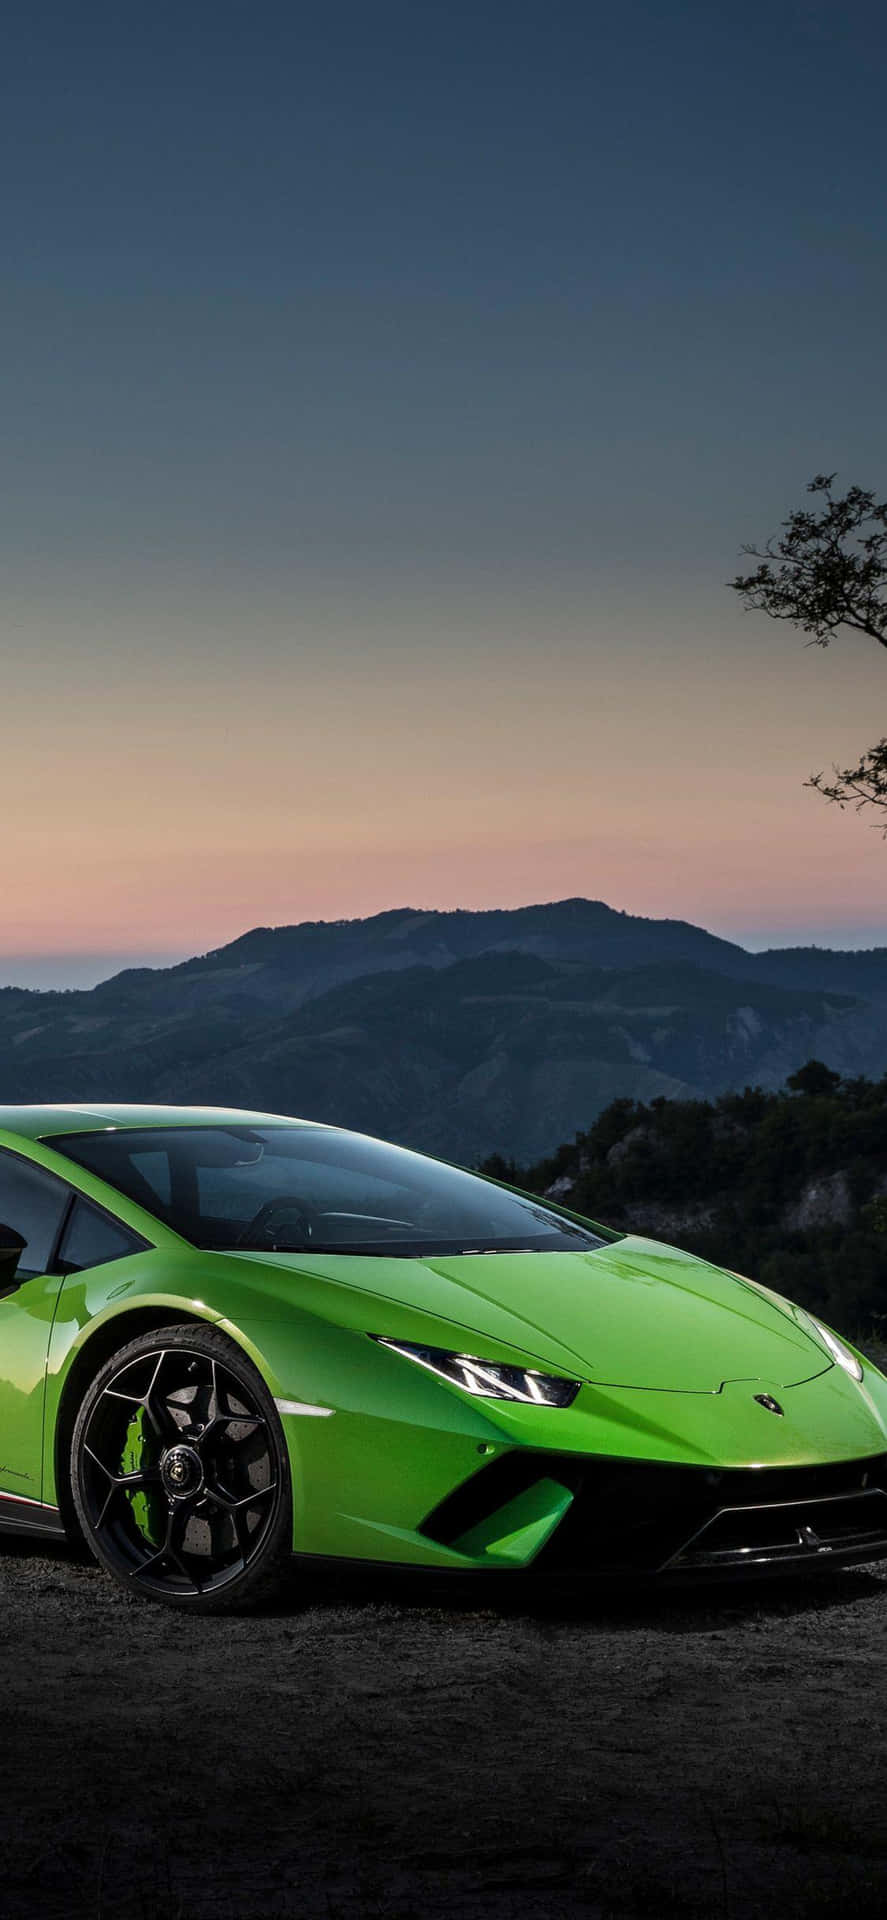 Green Sports Car Lamborghini Phone Wallpaper